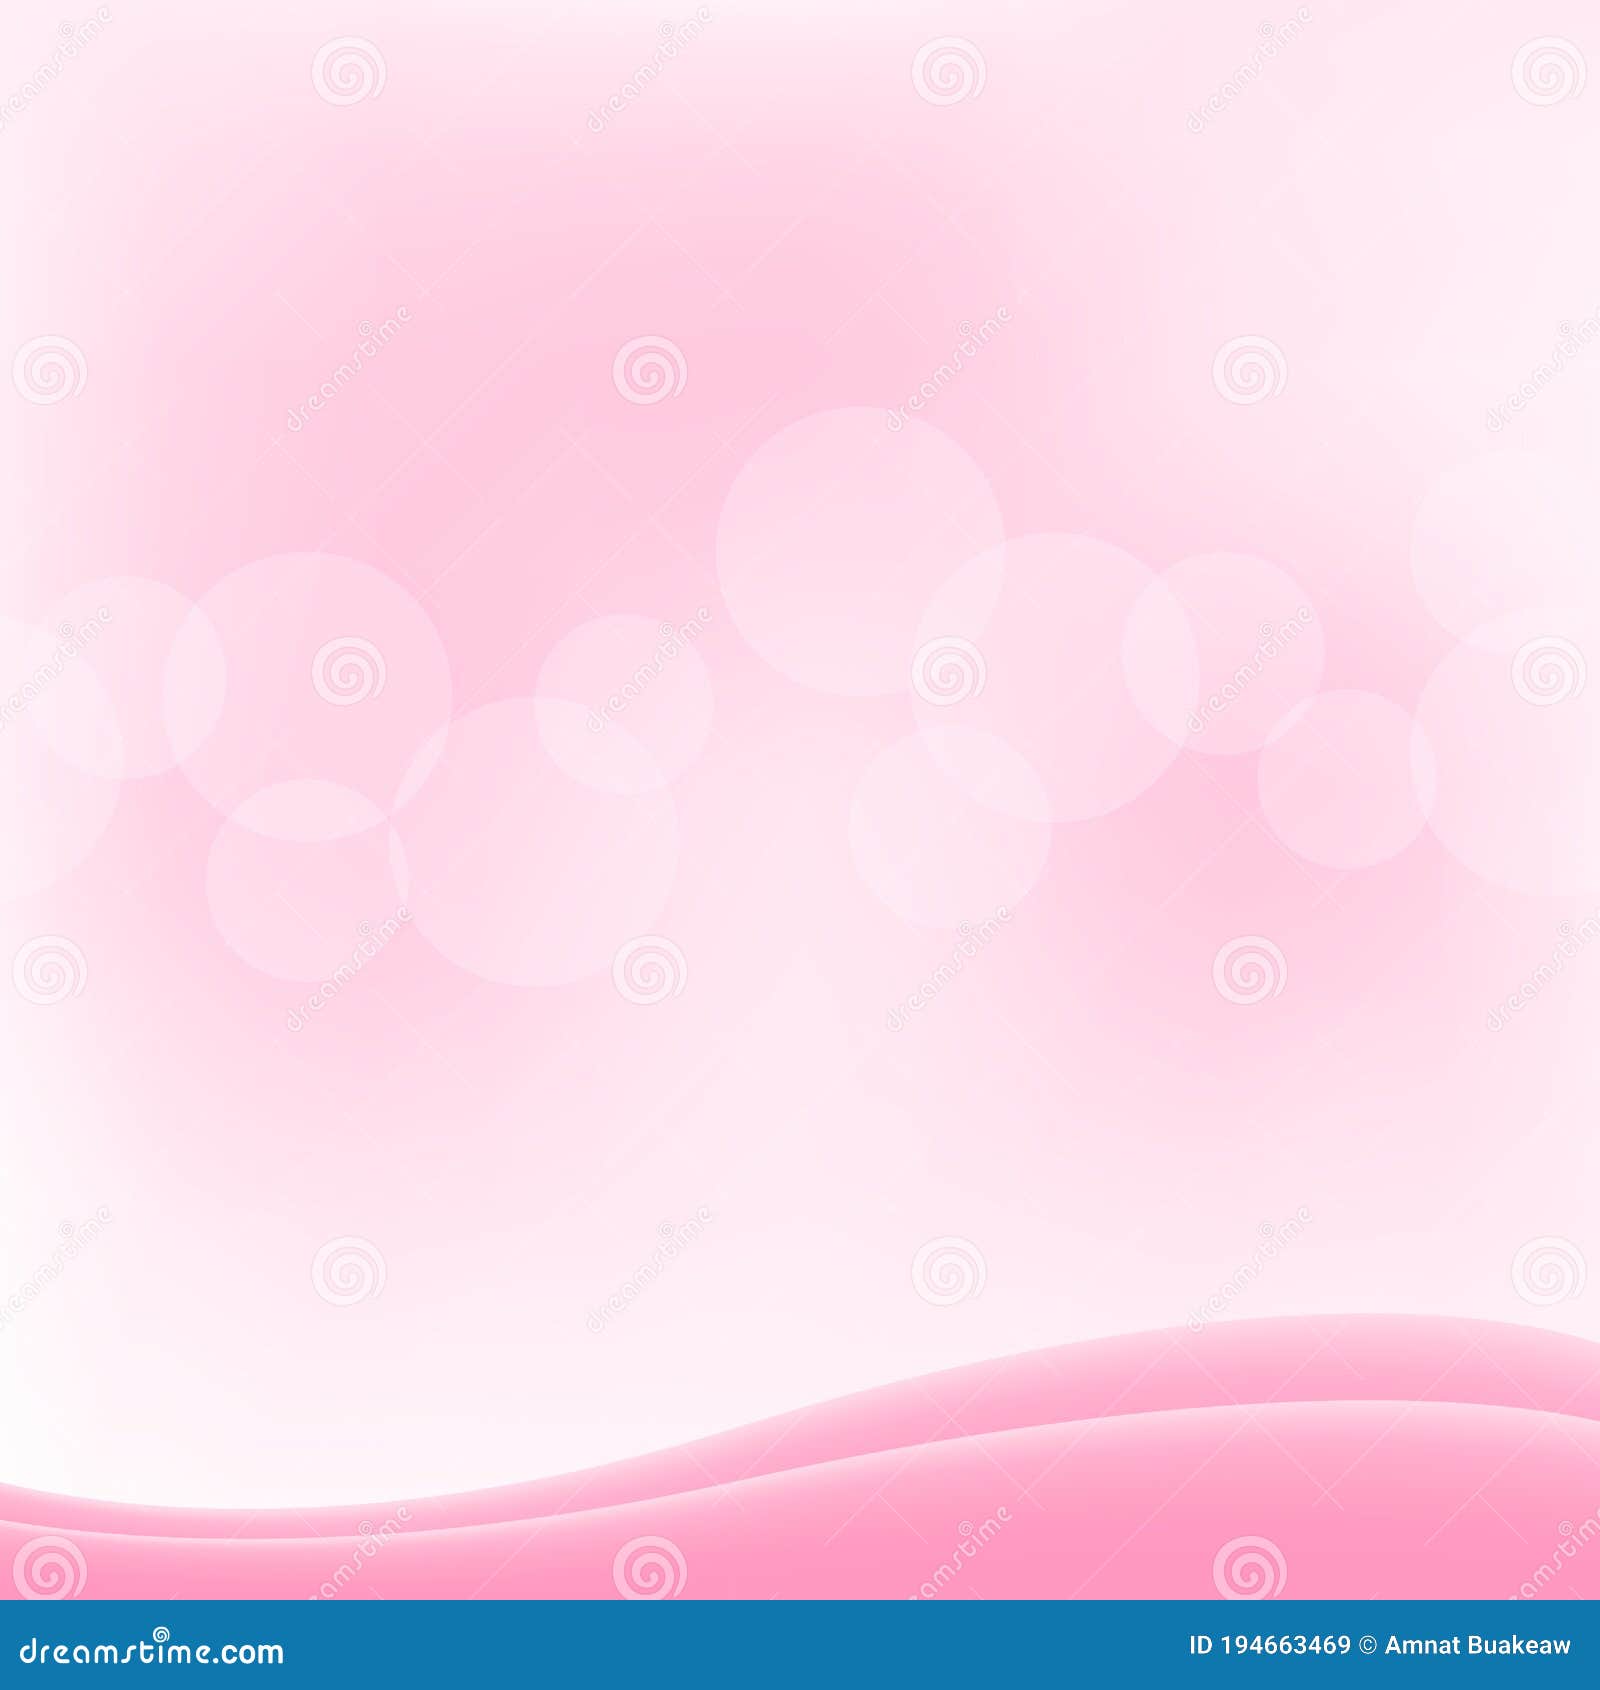 Pastel Pink Background Images gambar ke 19